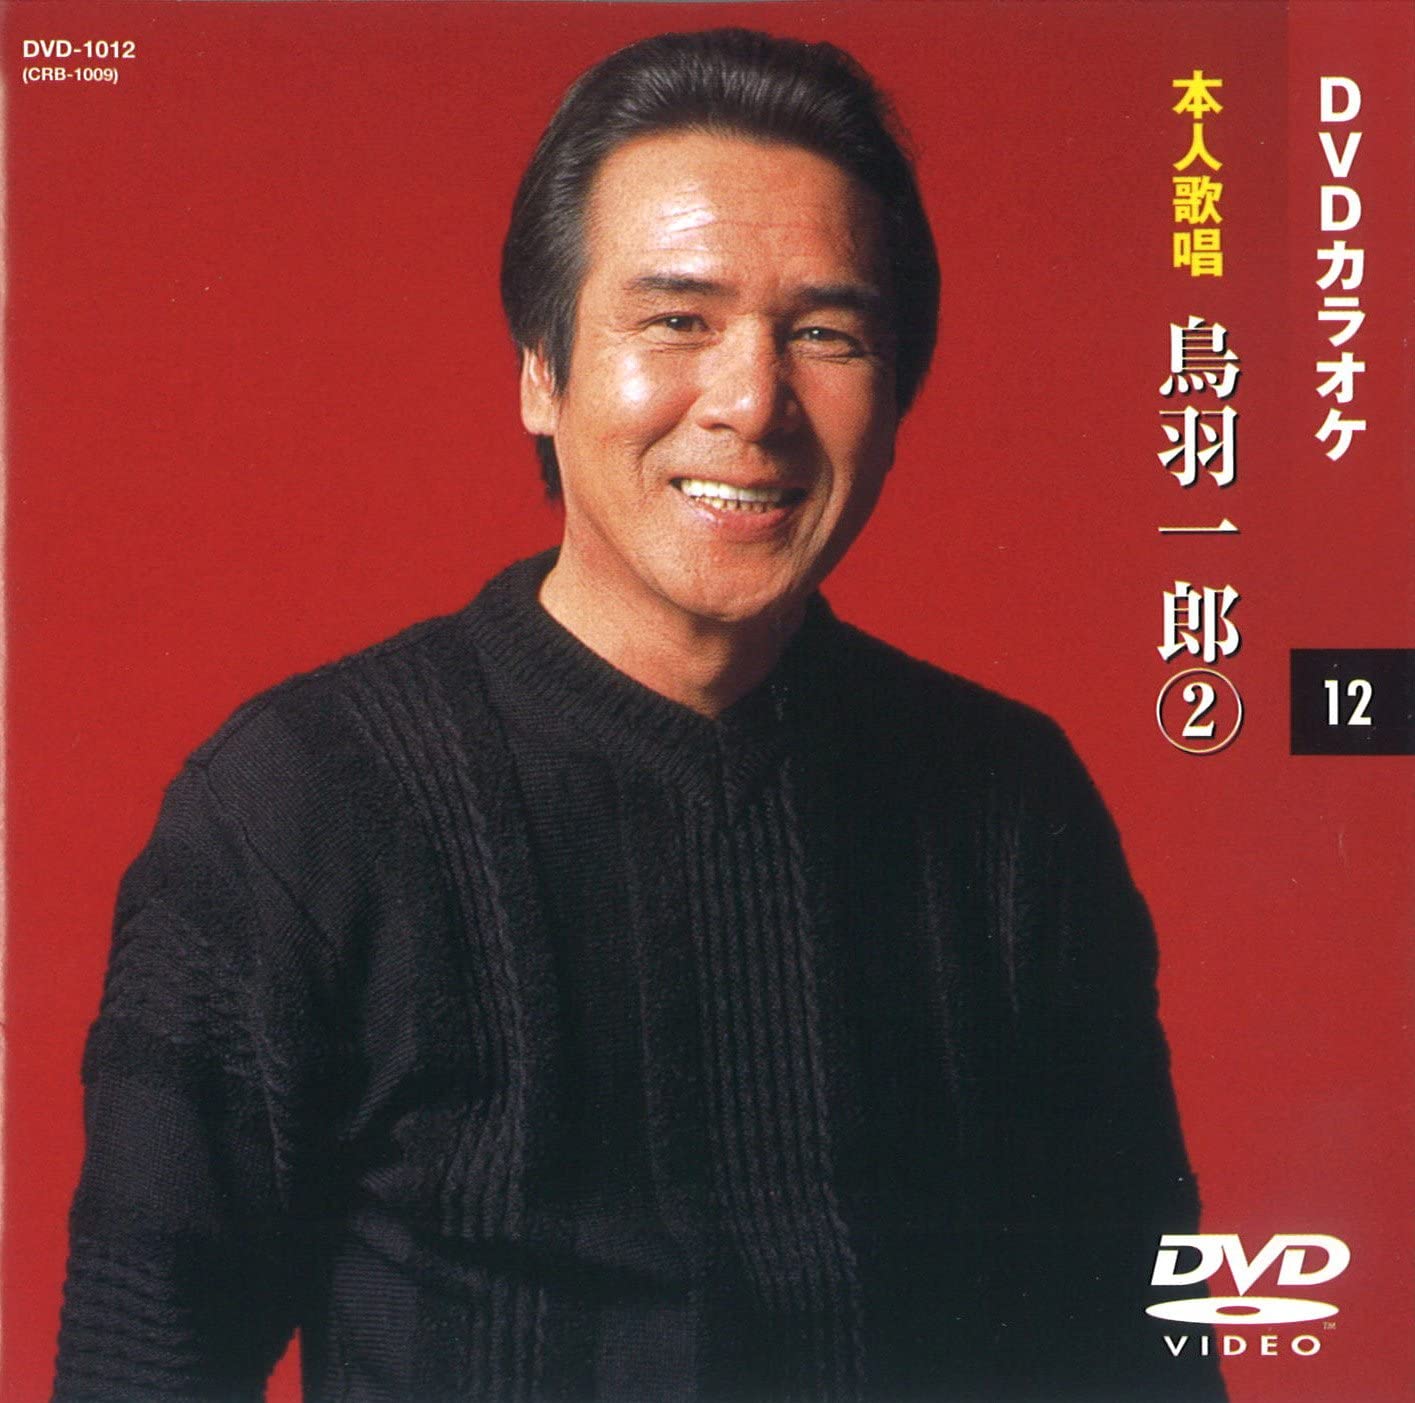 【本人歌唱DVDカラオケ】 鳥羽一郎 2 (DVDカラオケ) DVD-1012